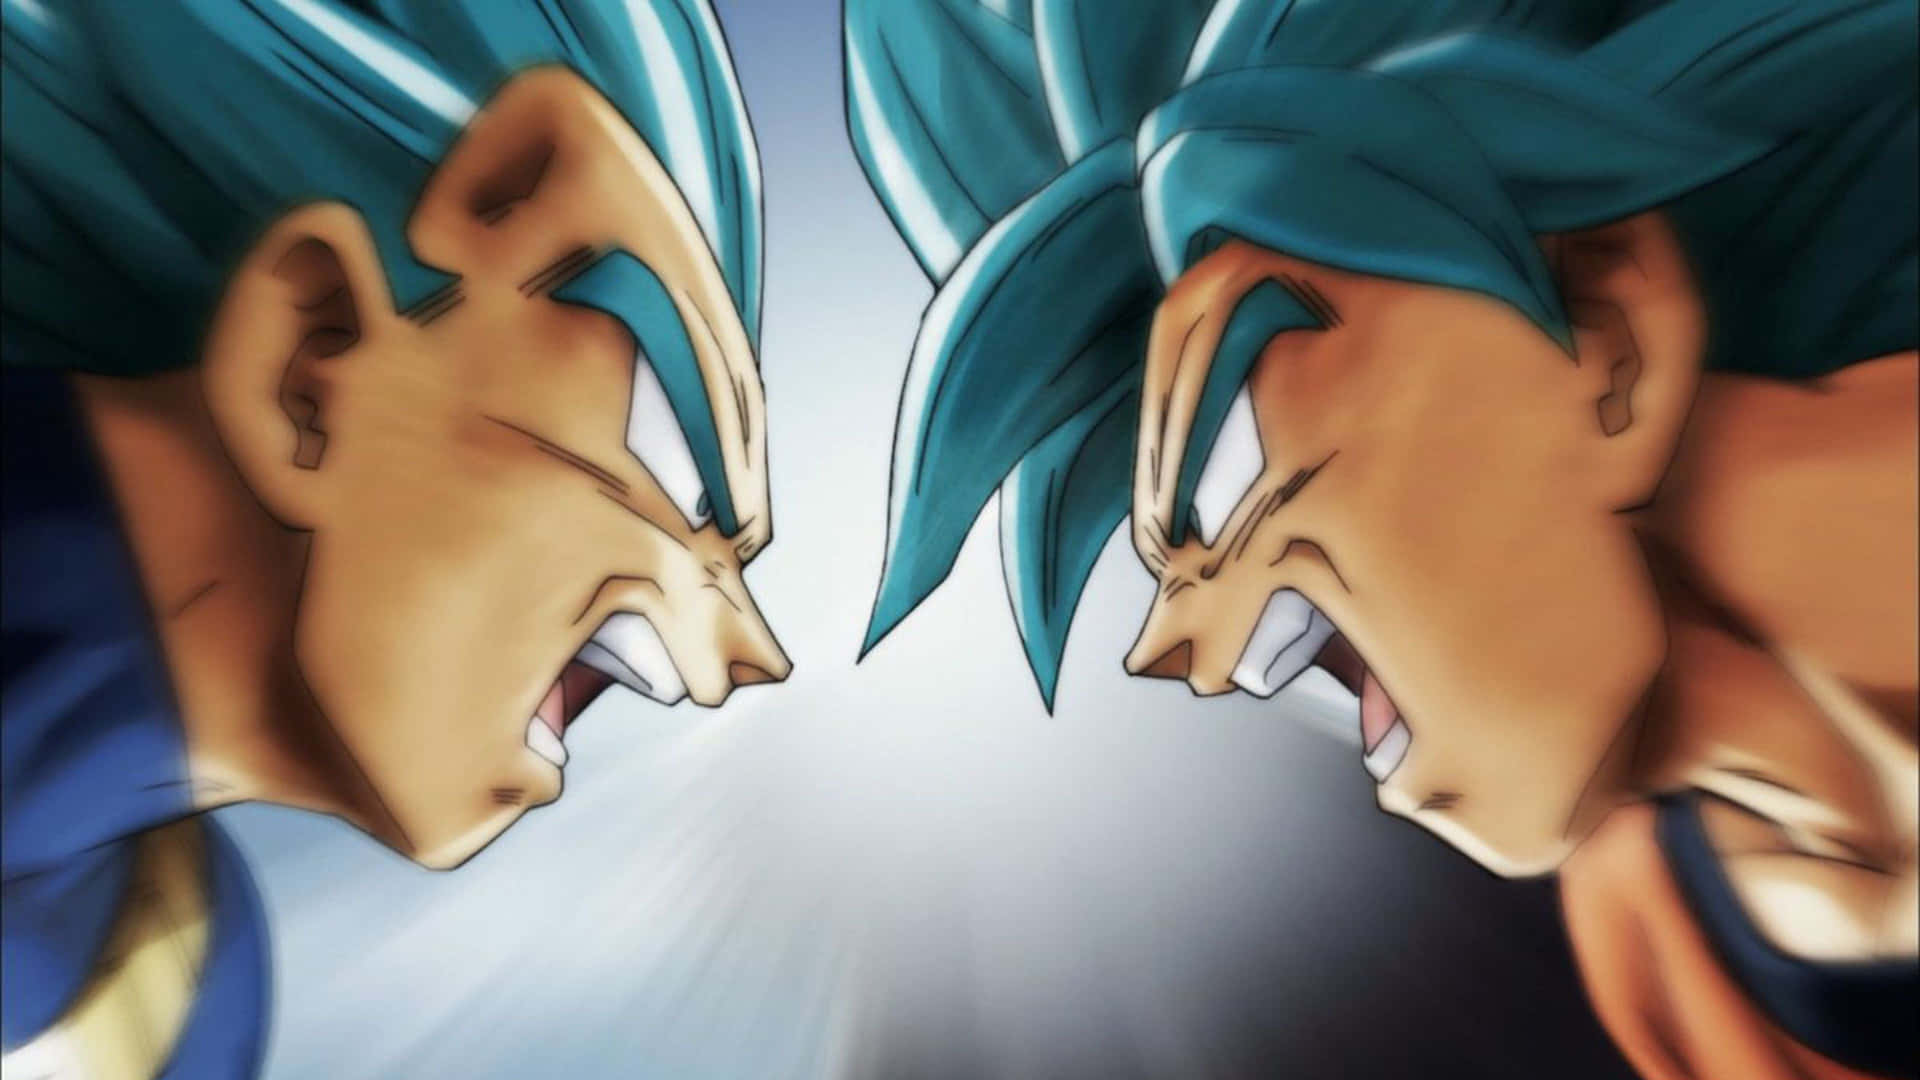 Goku And Vegeta Dragon Ball Z Face To Face Wallpaper